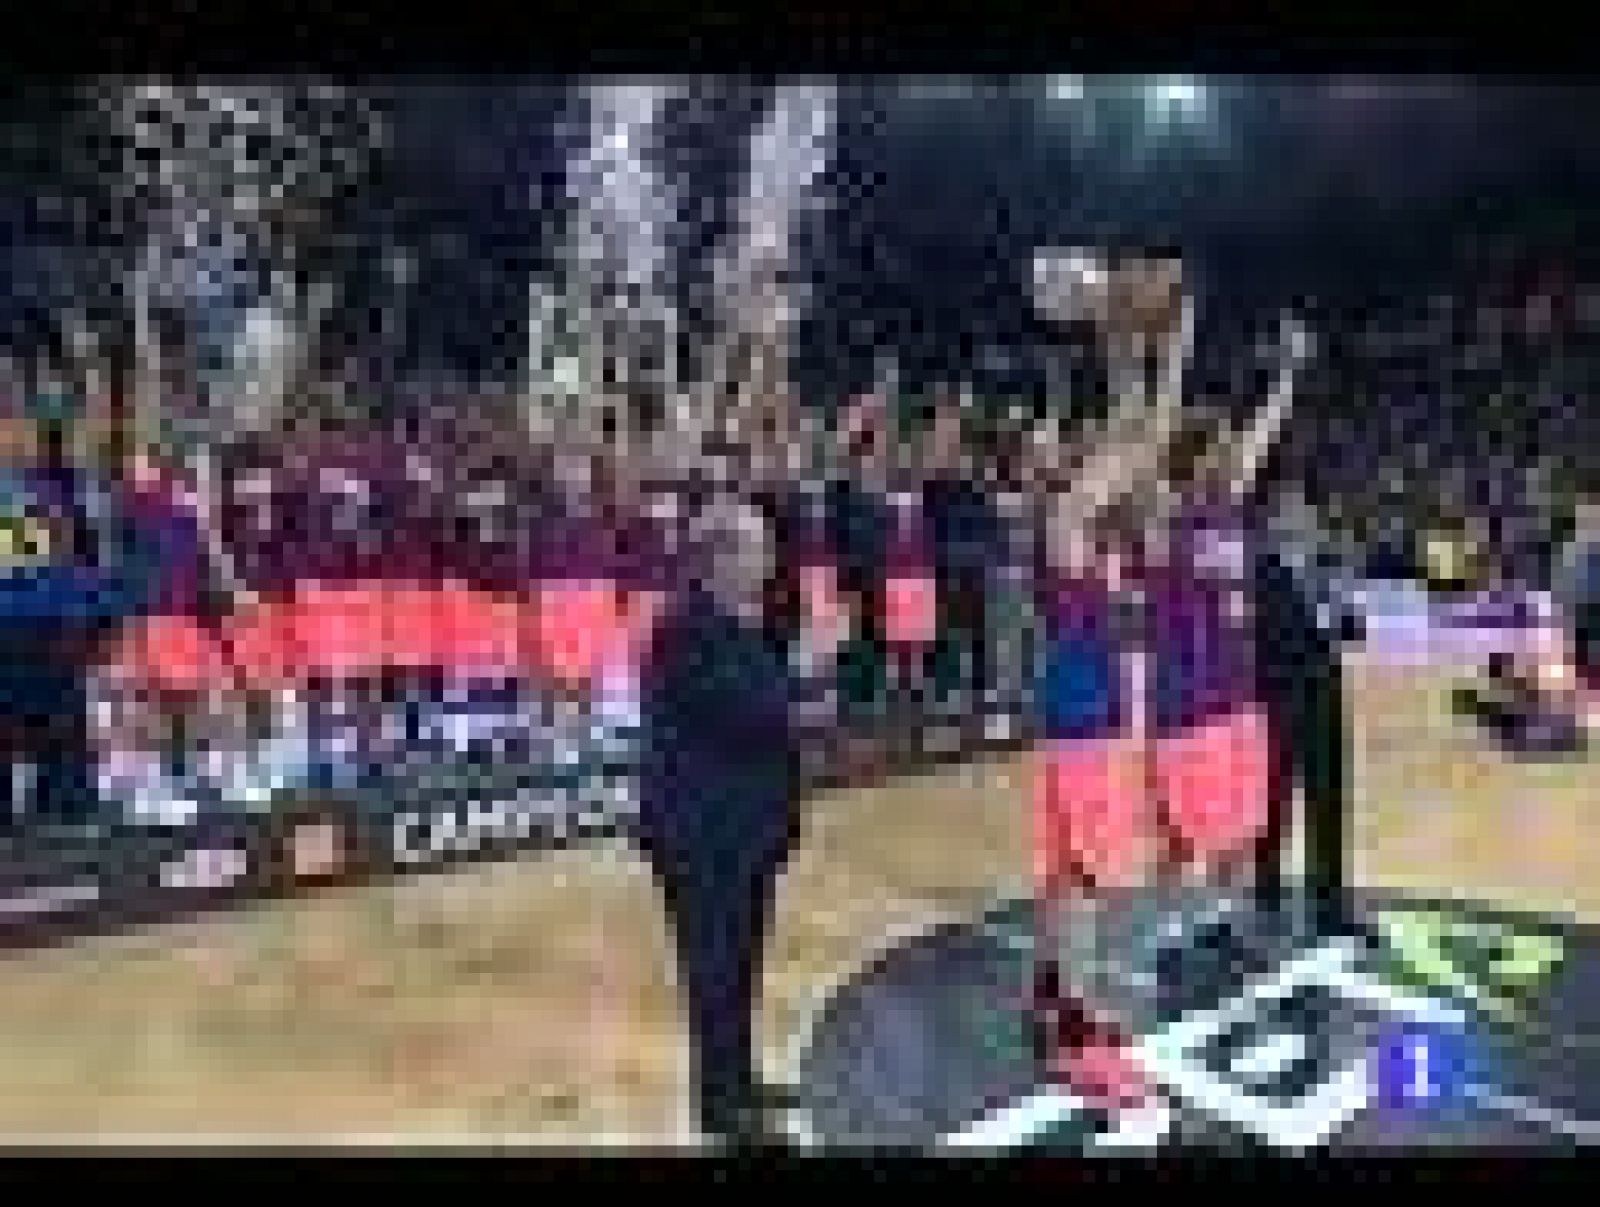 El Regal Barcelona ha coronado el triplete de Supercopa, Copa y Liga al imponerse 3-0 al Bilbao Basket en la serie final por el título de la ACB. Navarro ha sido elegido MVP de la final y Ricky Rubio no ha desvelado su futuro.